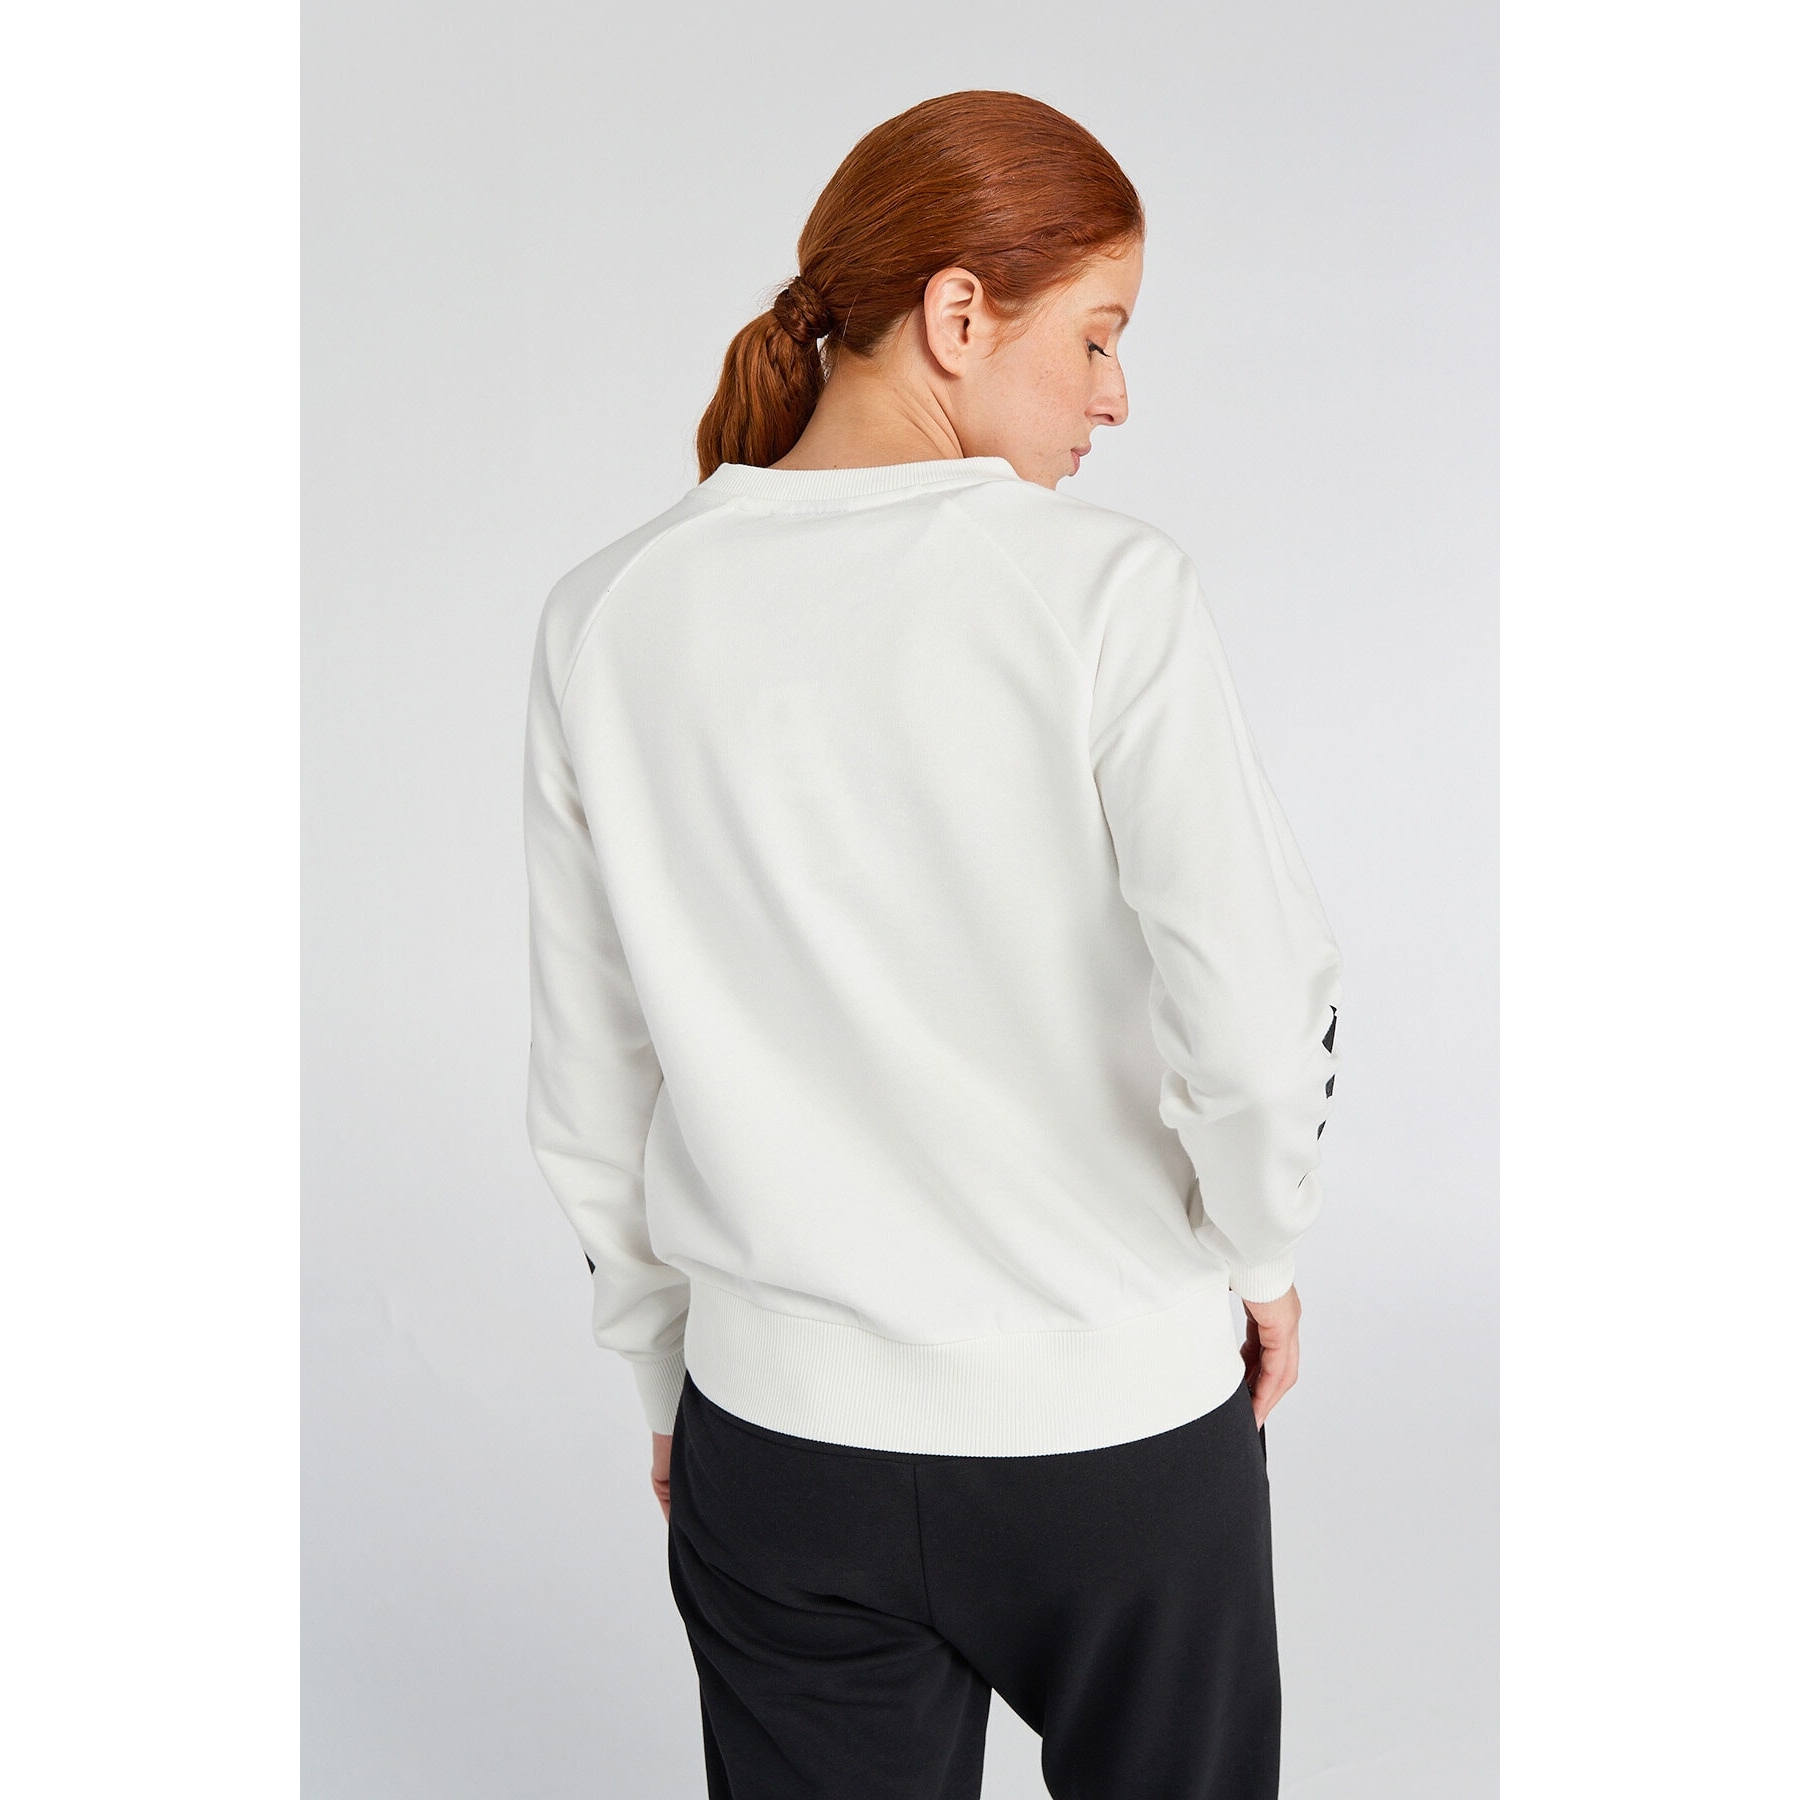 Hummel Noni 2.0 Beyaz Sweatshirt (921457-9003)